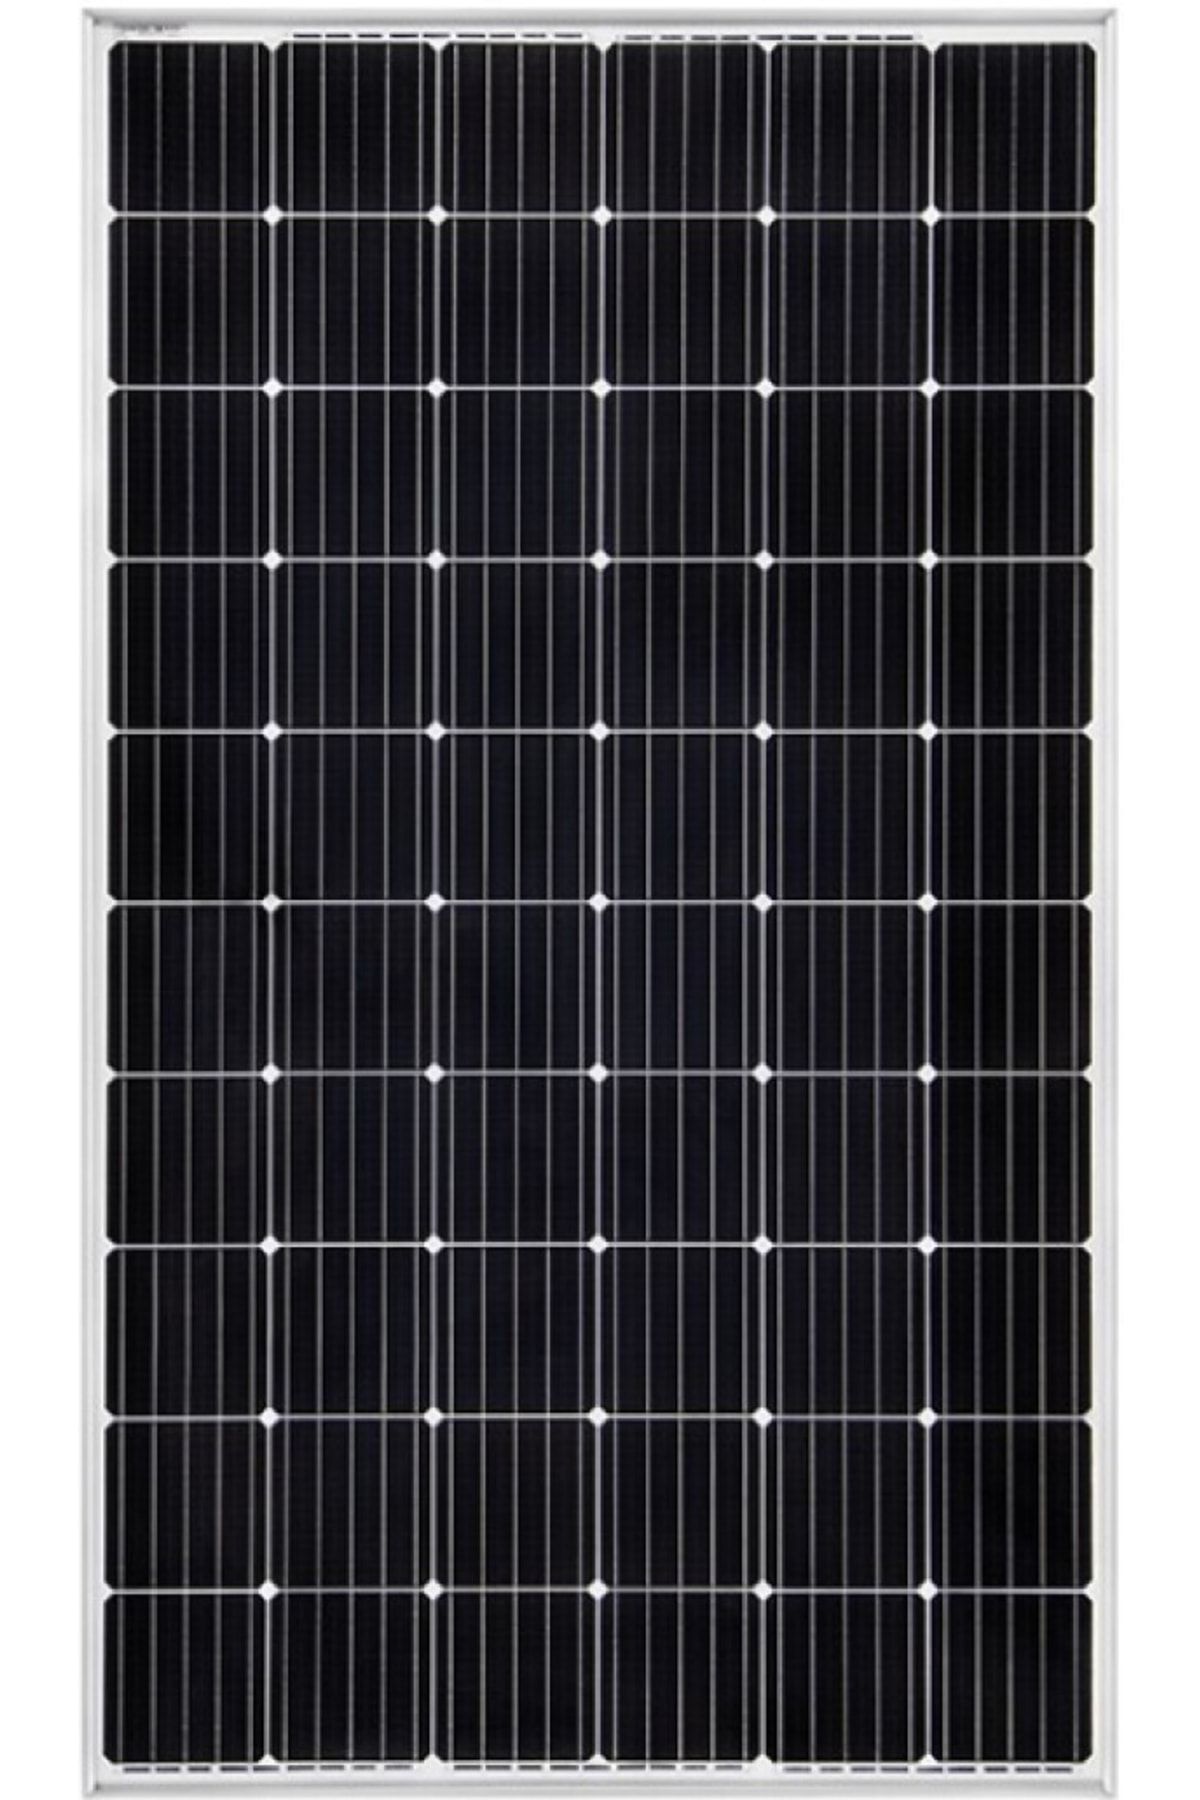 ÖDÜL SOLAR 400 Watt Monokristal Perc Solar Güneş Paneli a Kalite